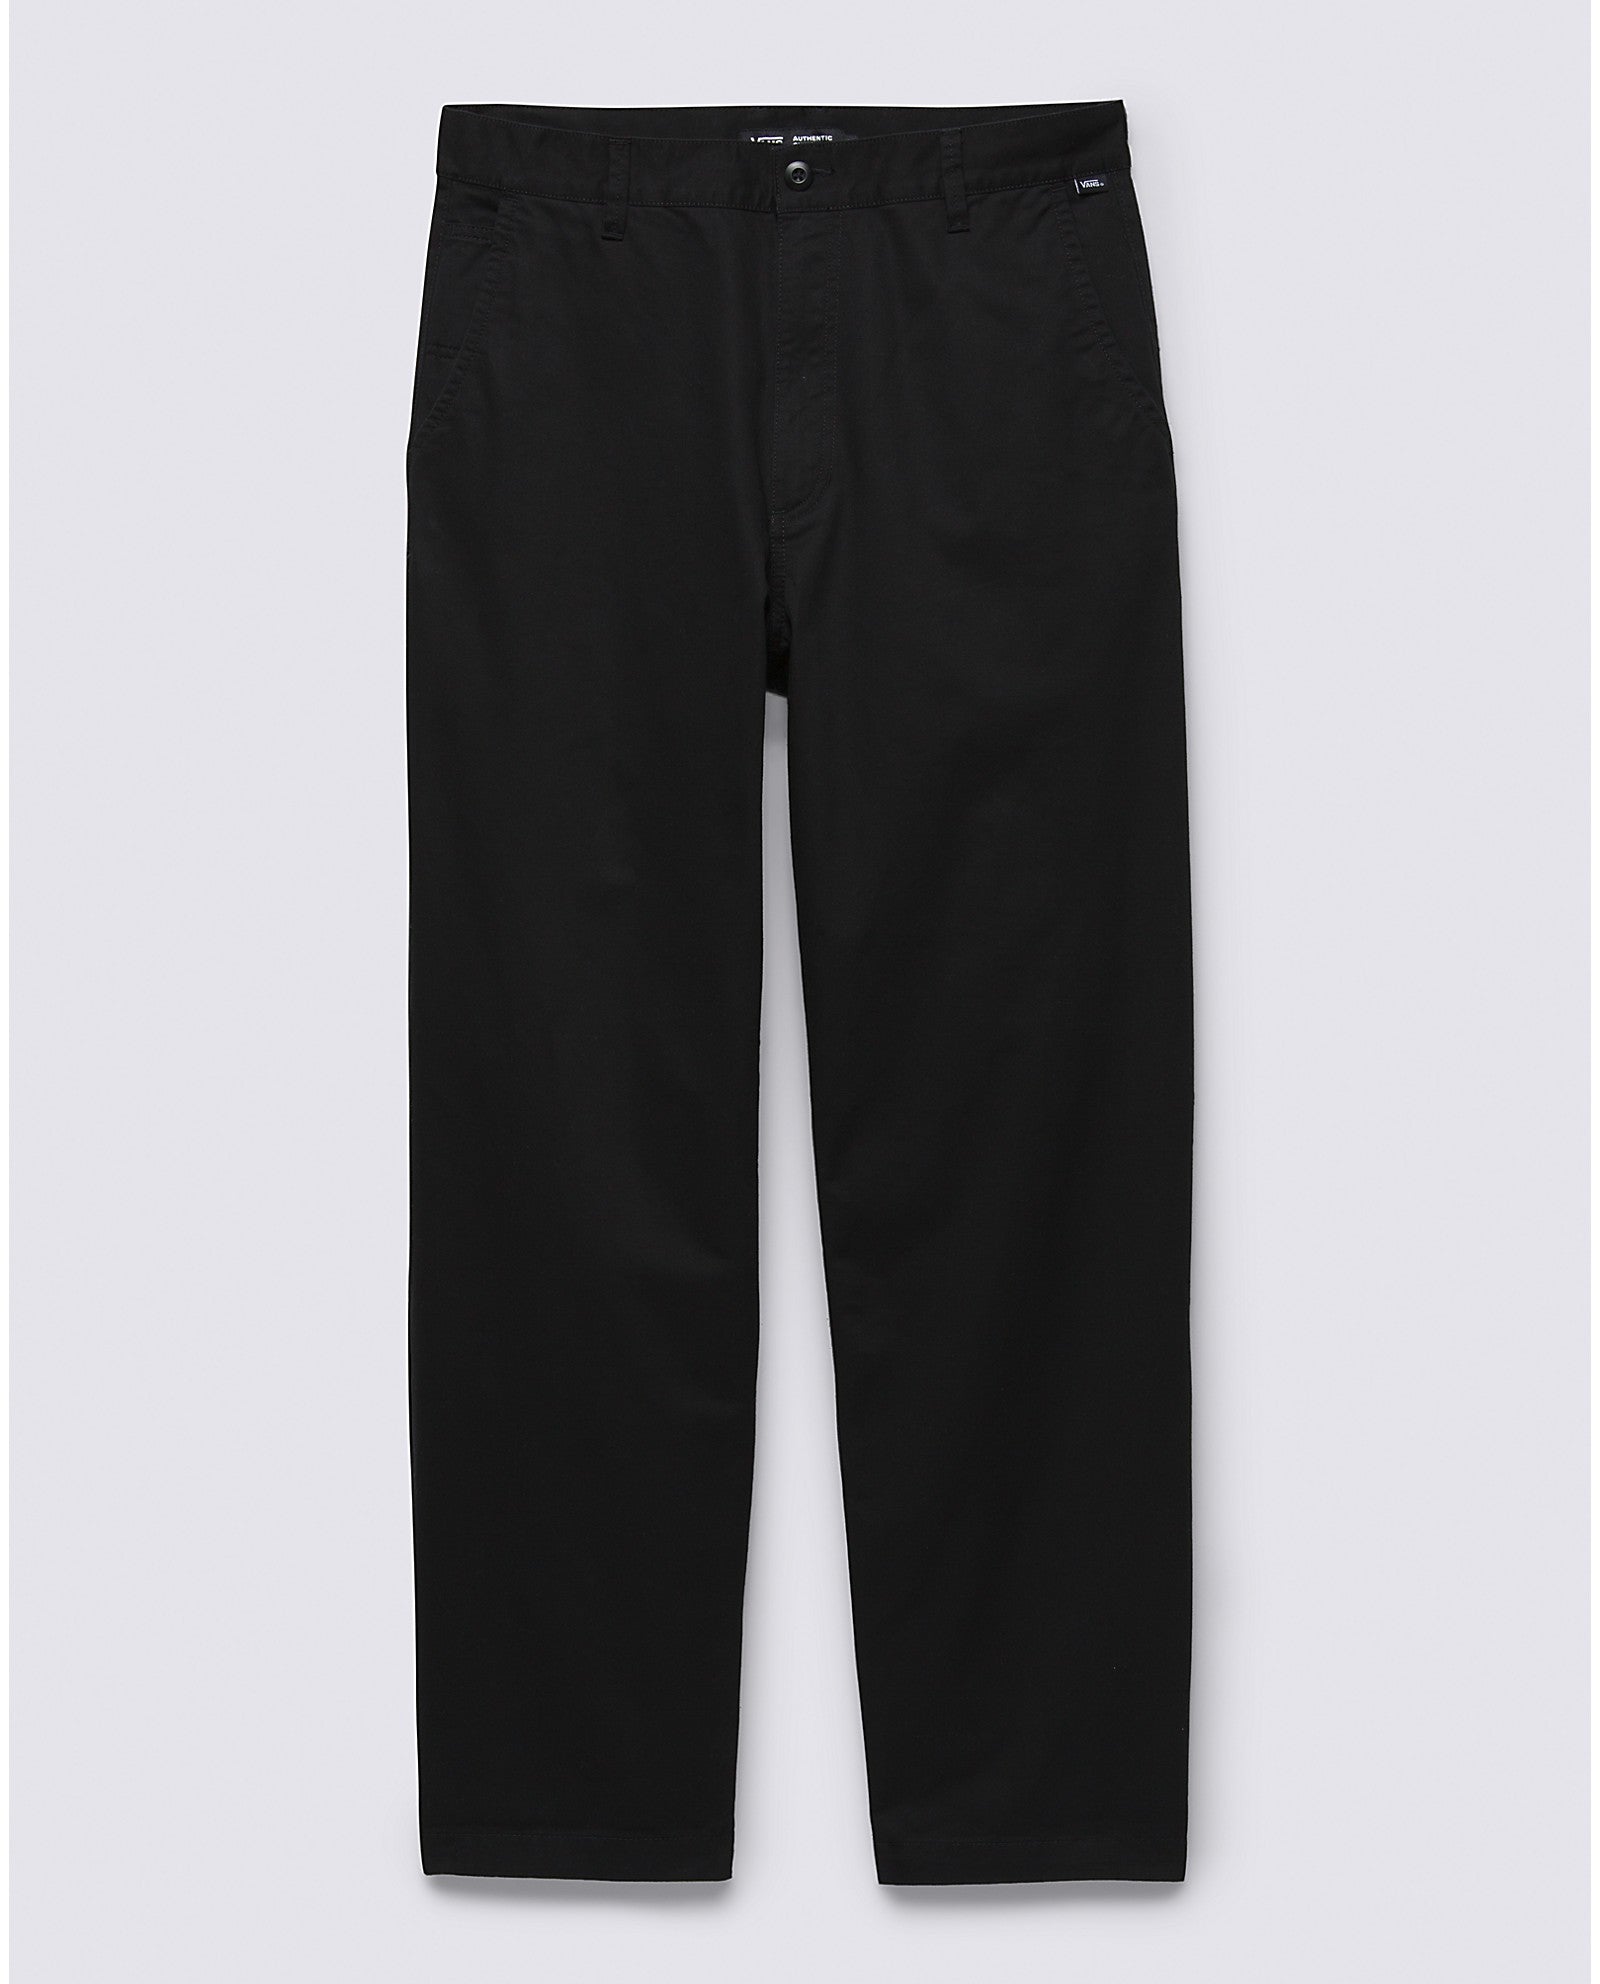 pantalon-authentic-baggy-noir-vans-vn000005-dm2-shop-06